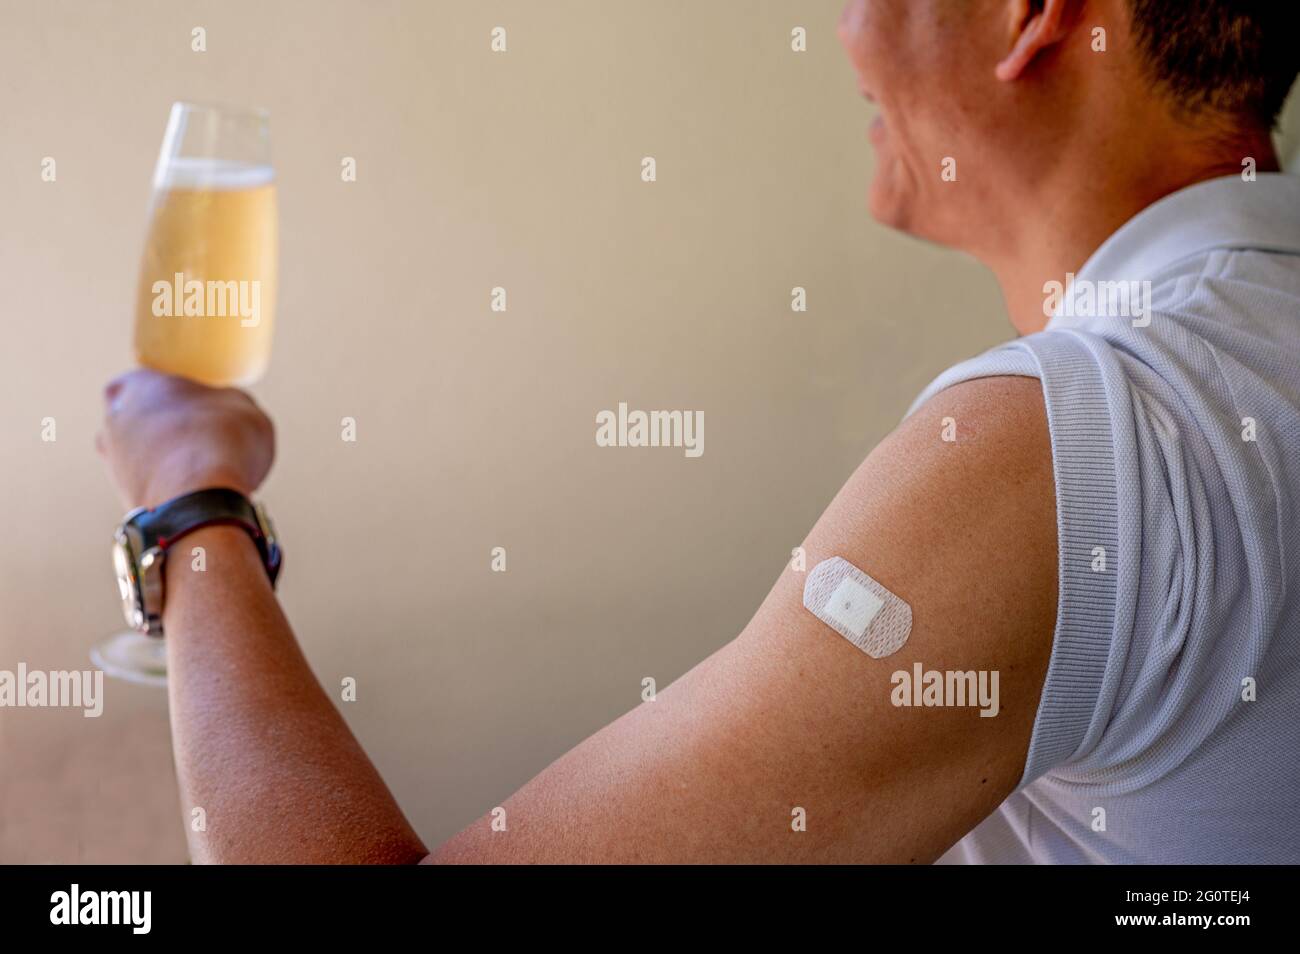 Un homme asiatique montre du plâtre sur l'épaule après le vaccin contre le coronavirus. Vaccination, immunisation, concept de prévention de la grippe. Obtenir le vaccin Covid-19. Ma Banque D'Images